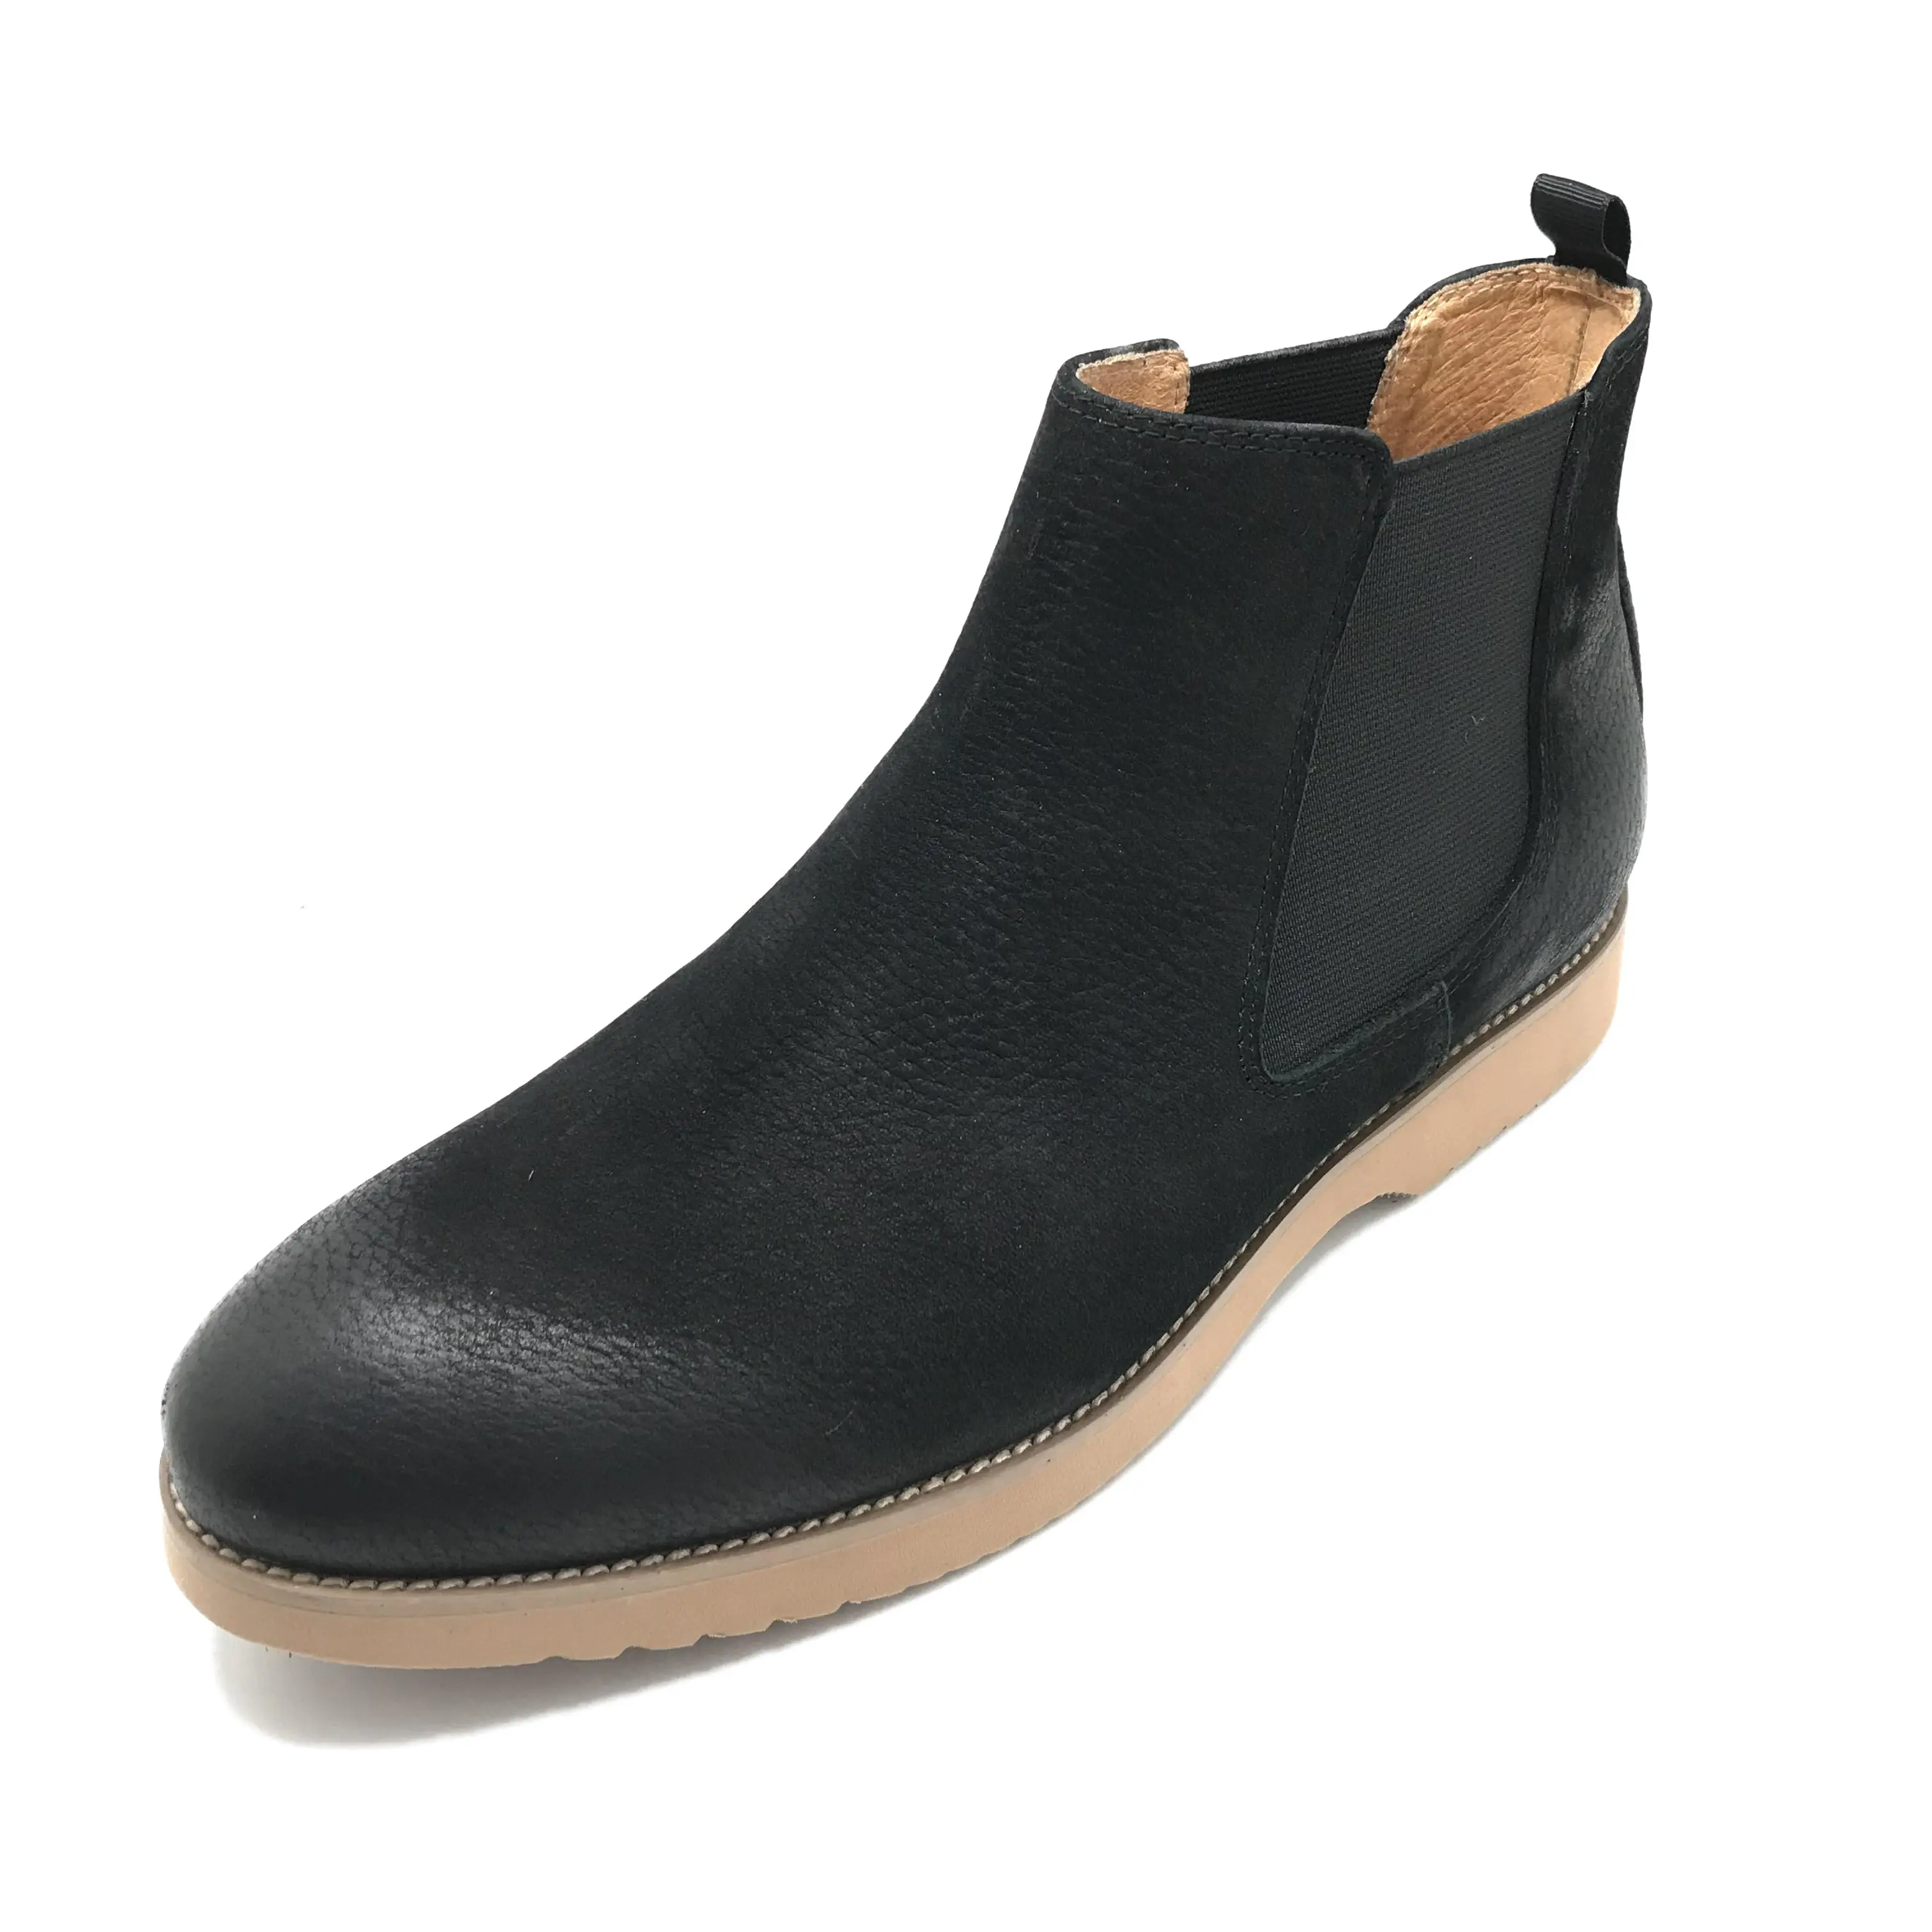 NEW chelsea bota de couro costura a mão de conforto macio italiano do vintage botas de couro genuíno para homens